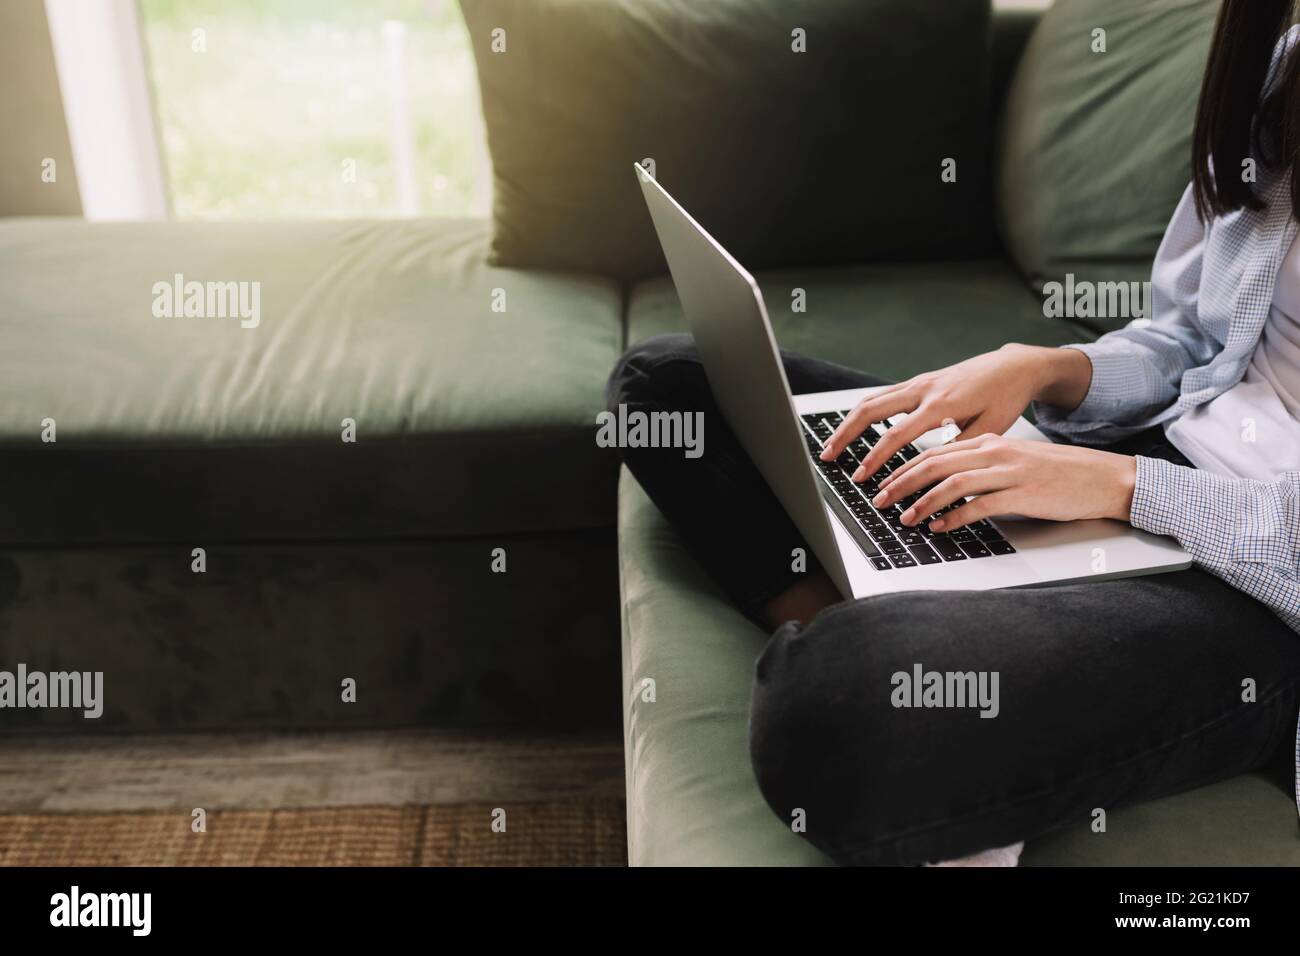 Une fille brune s'assoit sur un canapé vert et imprime ou tape quelque chose sur un ordinateur portable Banque D'Images